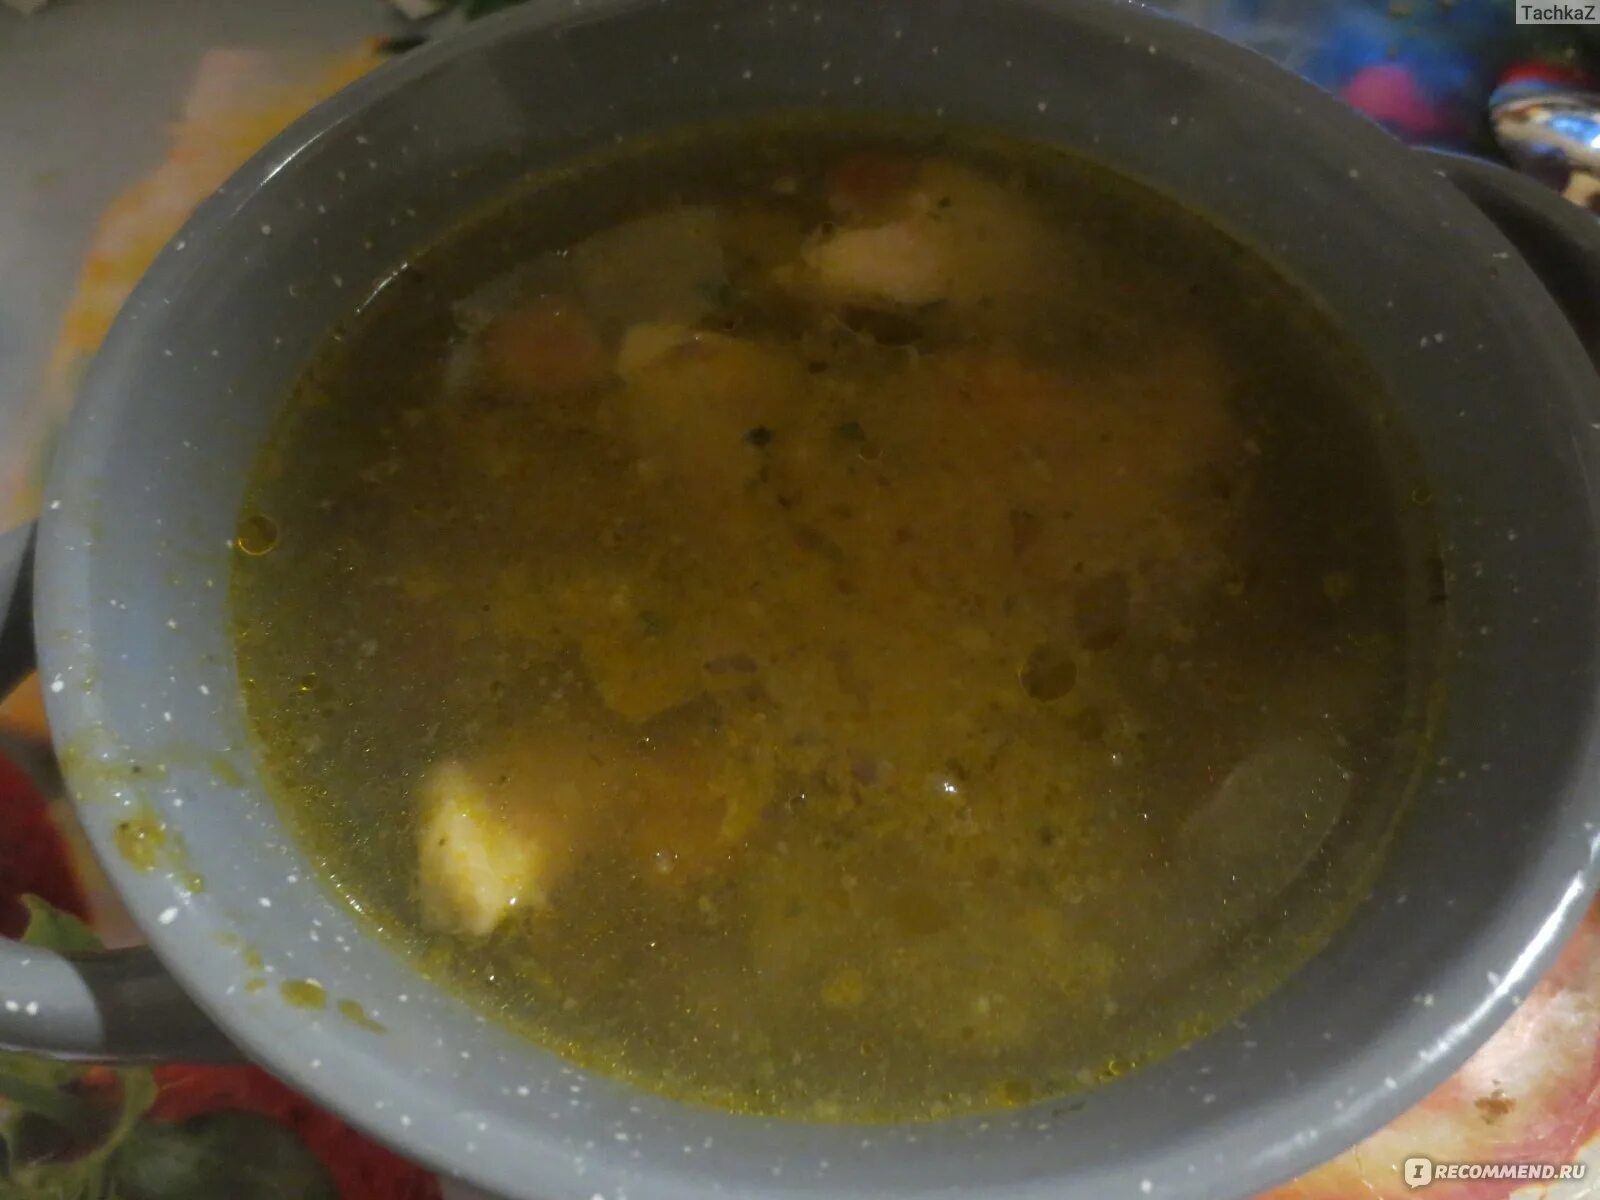 Заморозить щи. Квашеные щи. Заморозка для супа из овощей. Замороженные щи. Суп щи в банке.